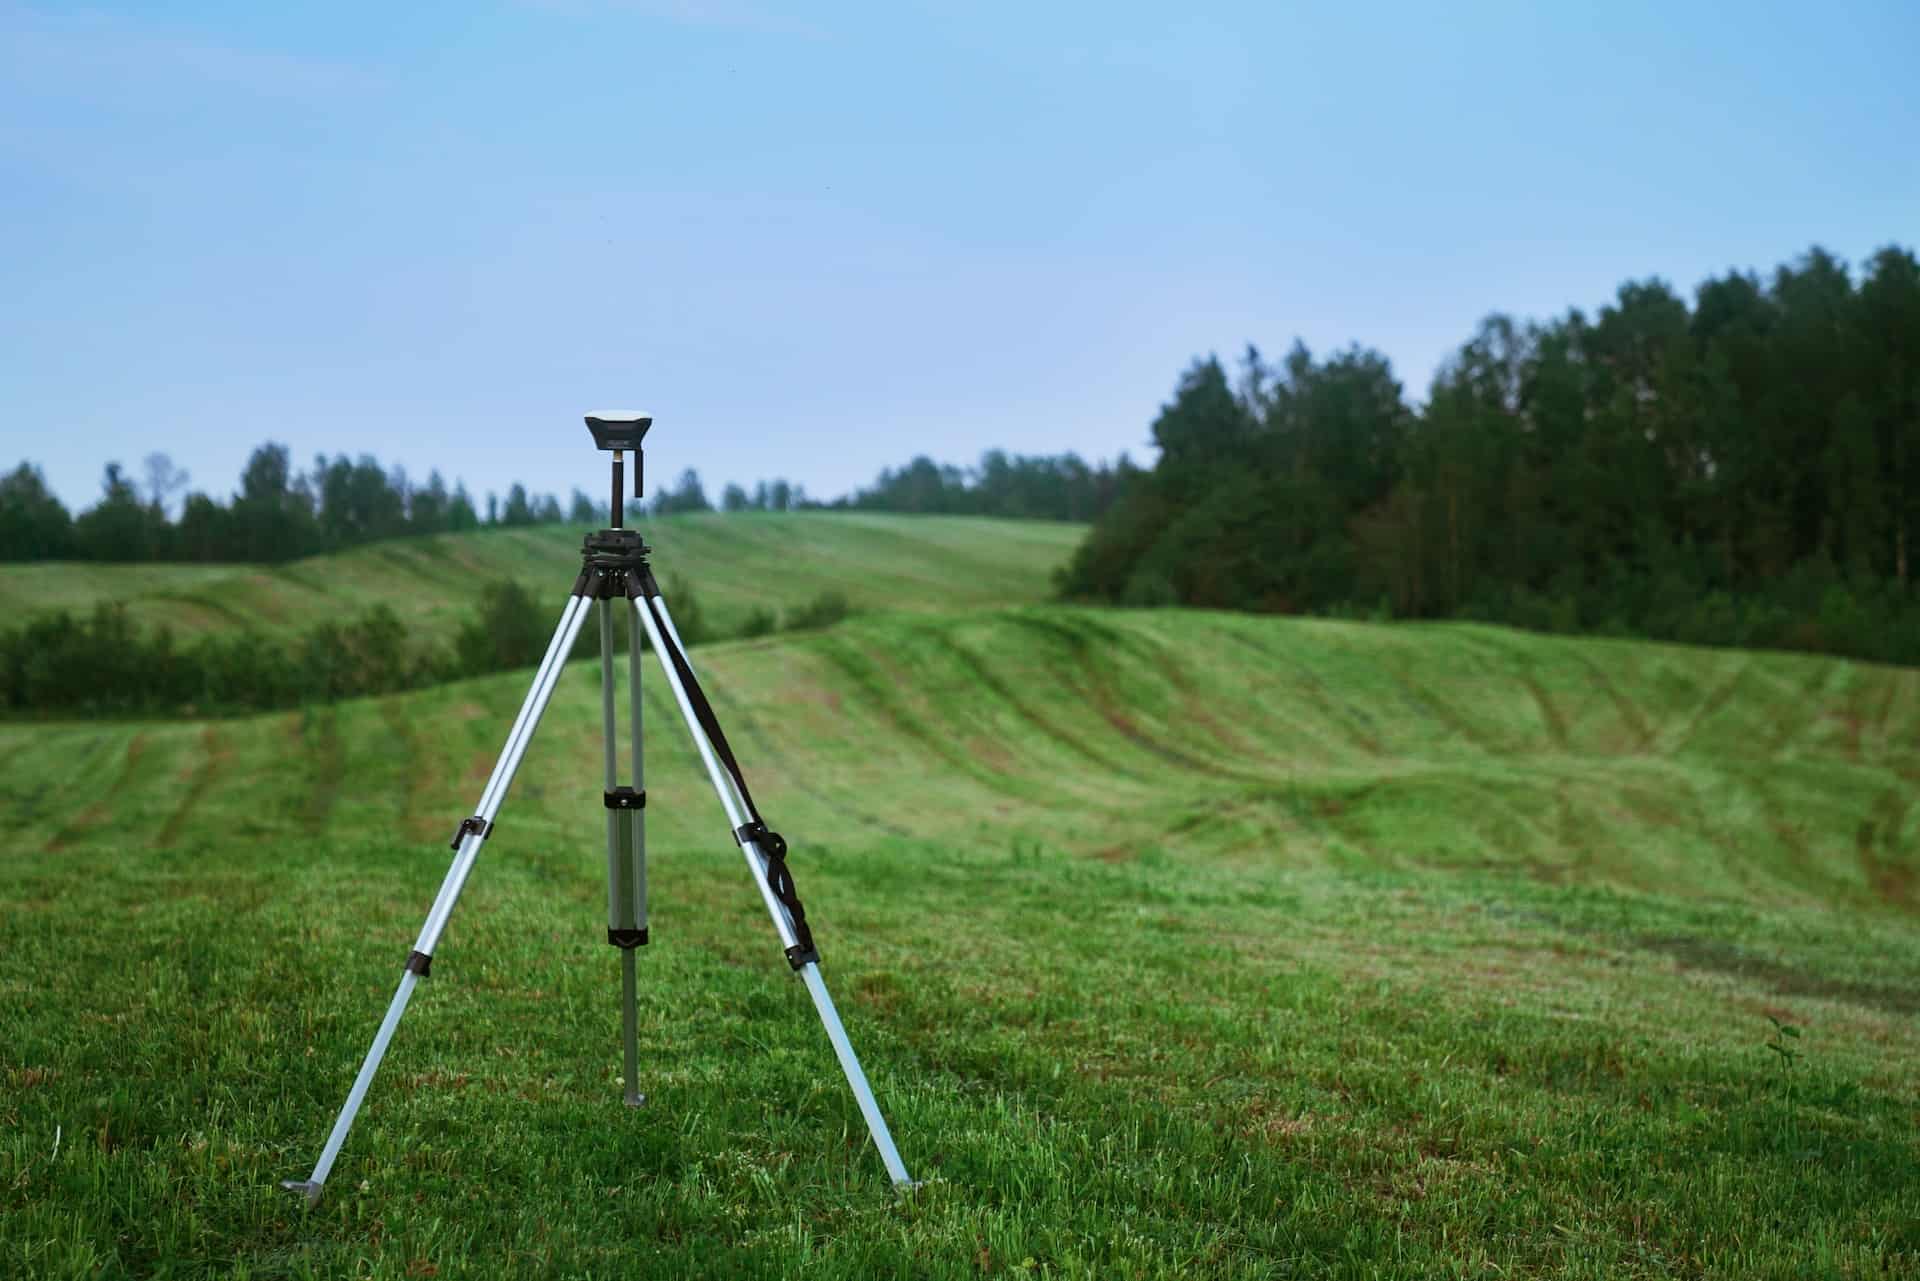 a land survey tripod on a field